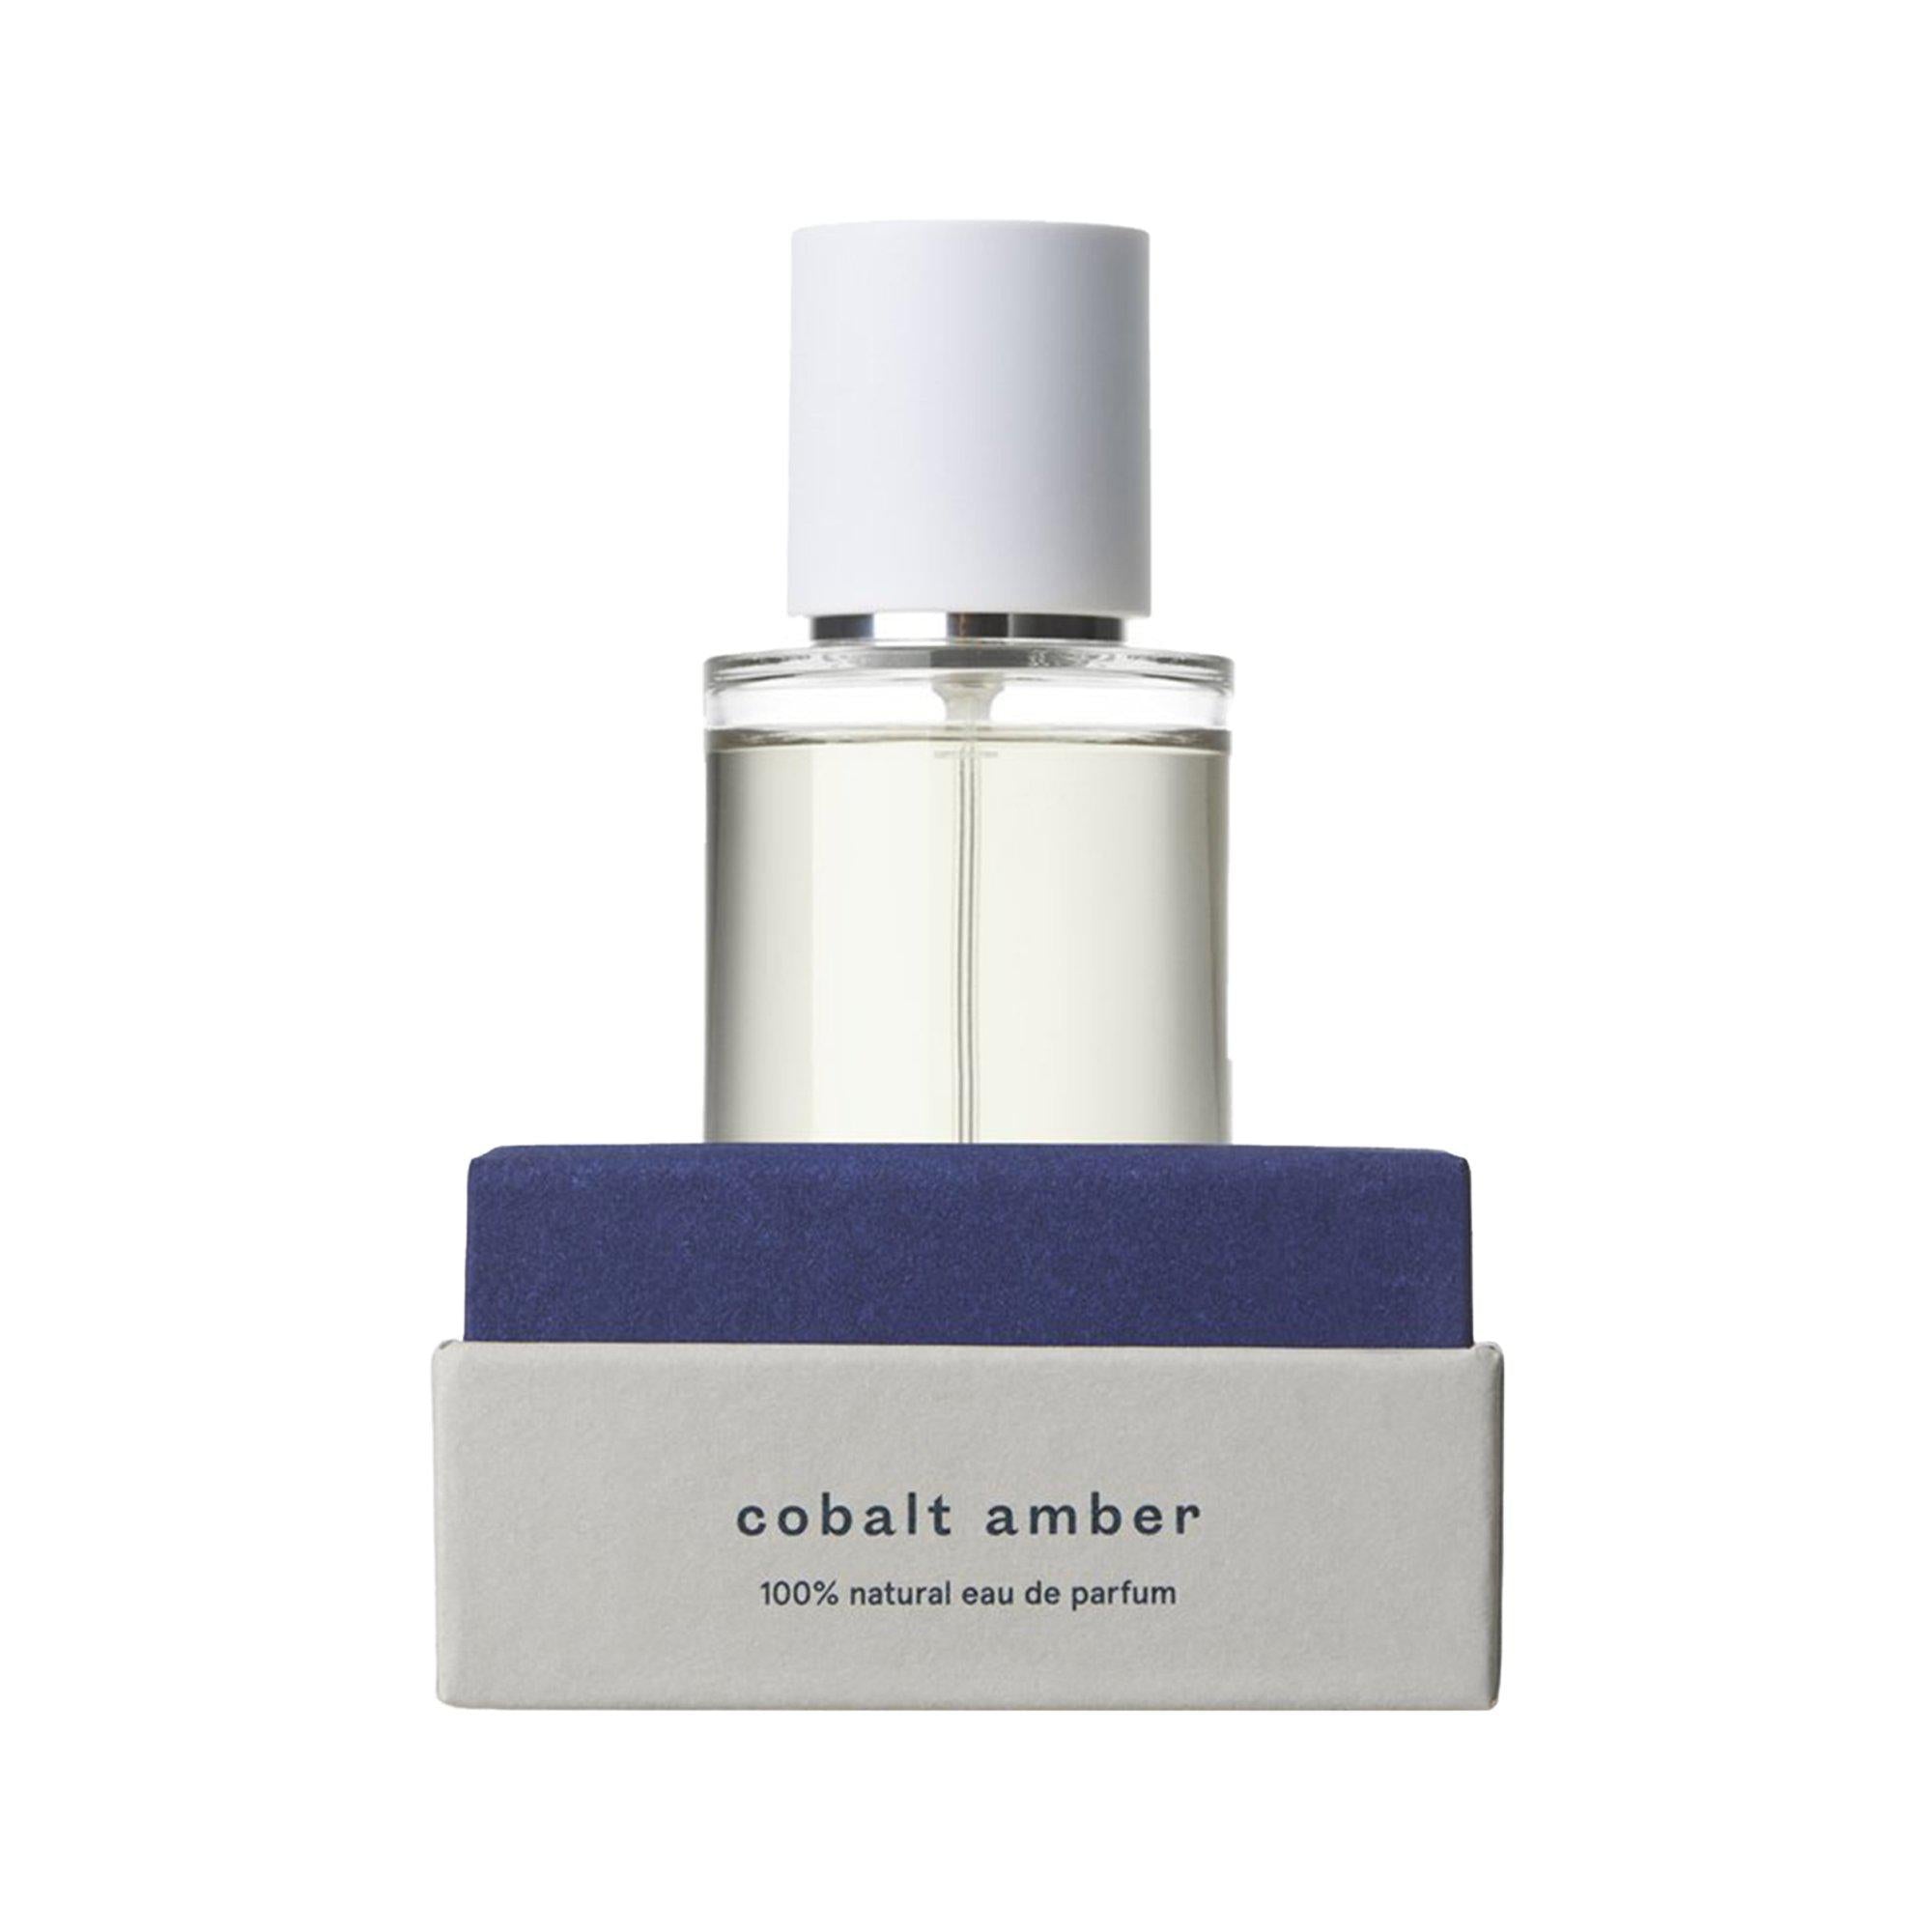 Indisponible : Parfum Naturel - Cobalt Amber Nicht verfügbar: Natürliches Parfüm - Kobalt-Amber - Abel Odor